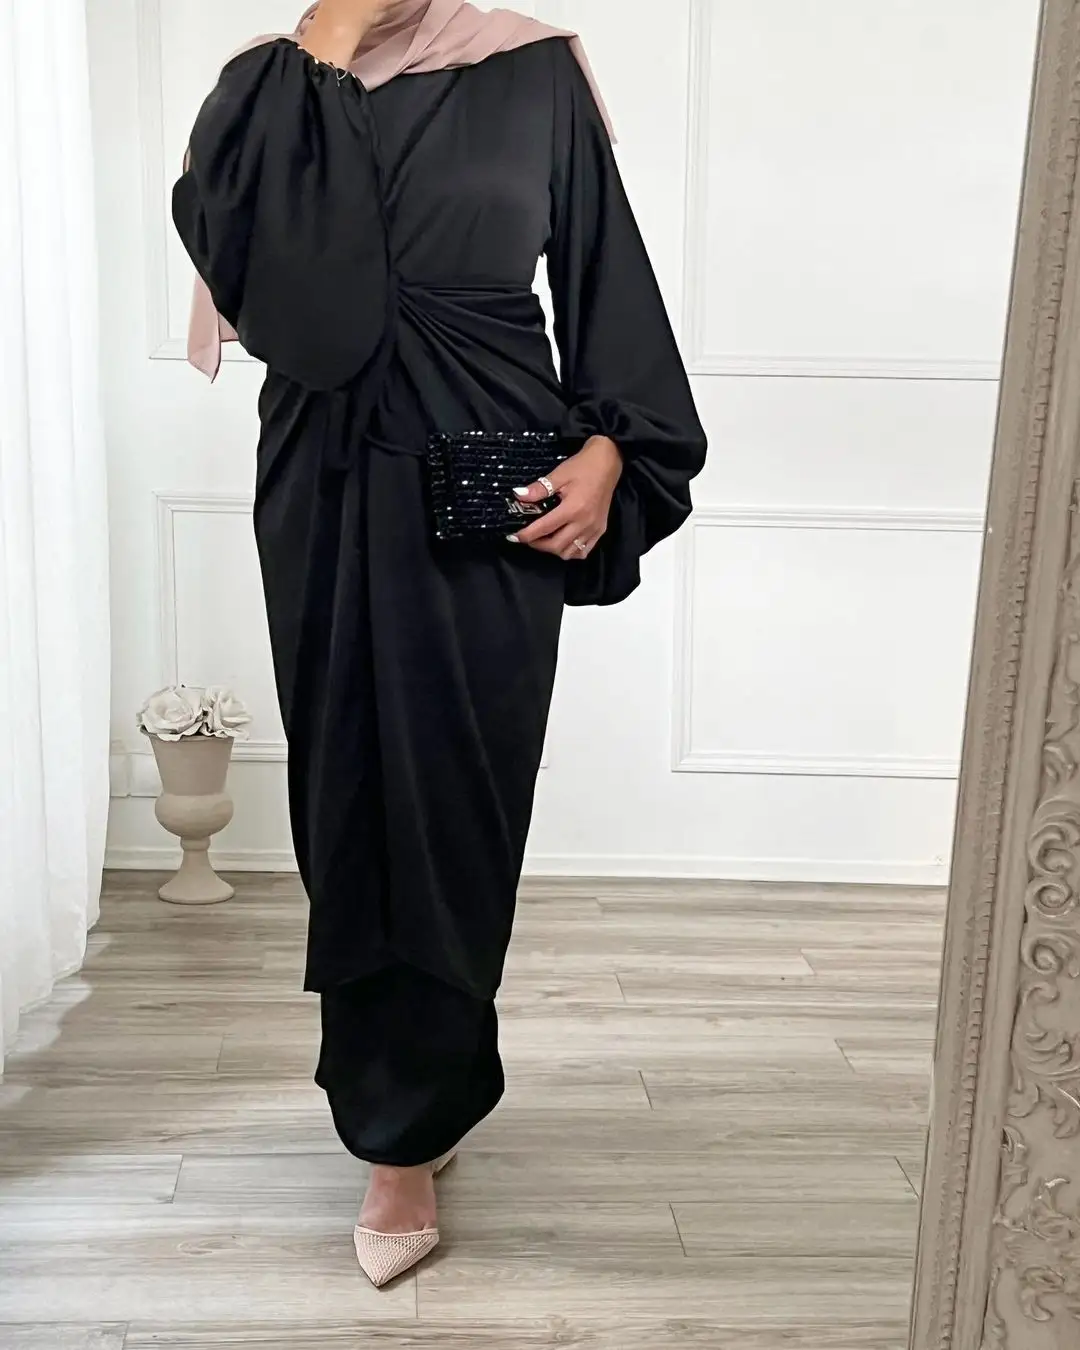 Mode Luxuriöse Frauen Plain Kaftan Elegante Langarm Satin Stoff Muslim Abaya Ethnische Kleidung Kleid